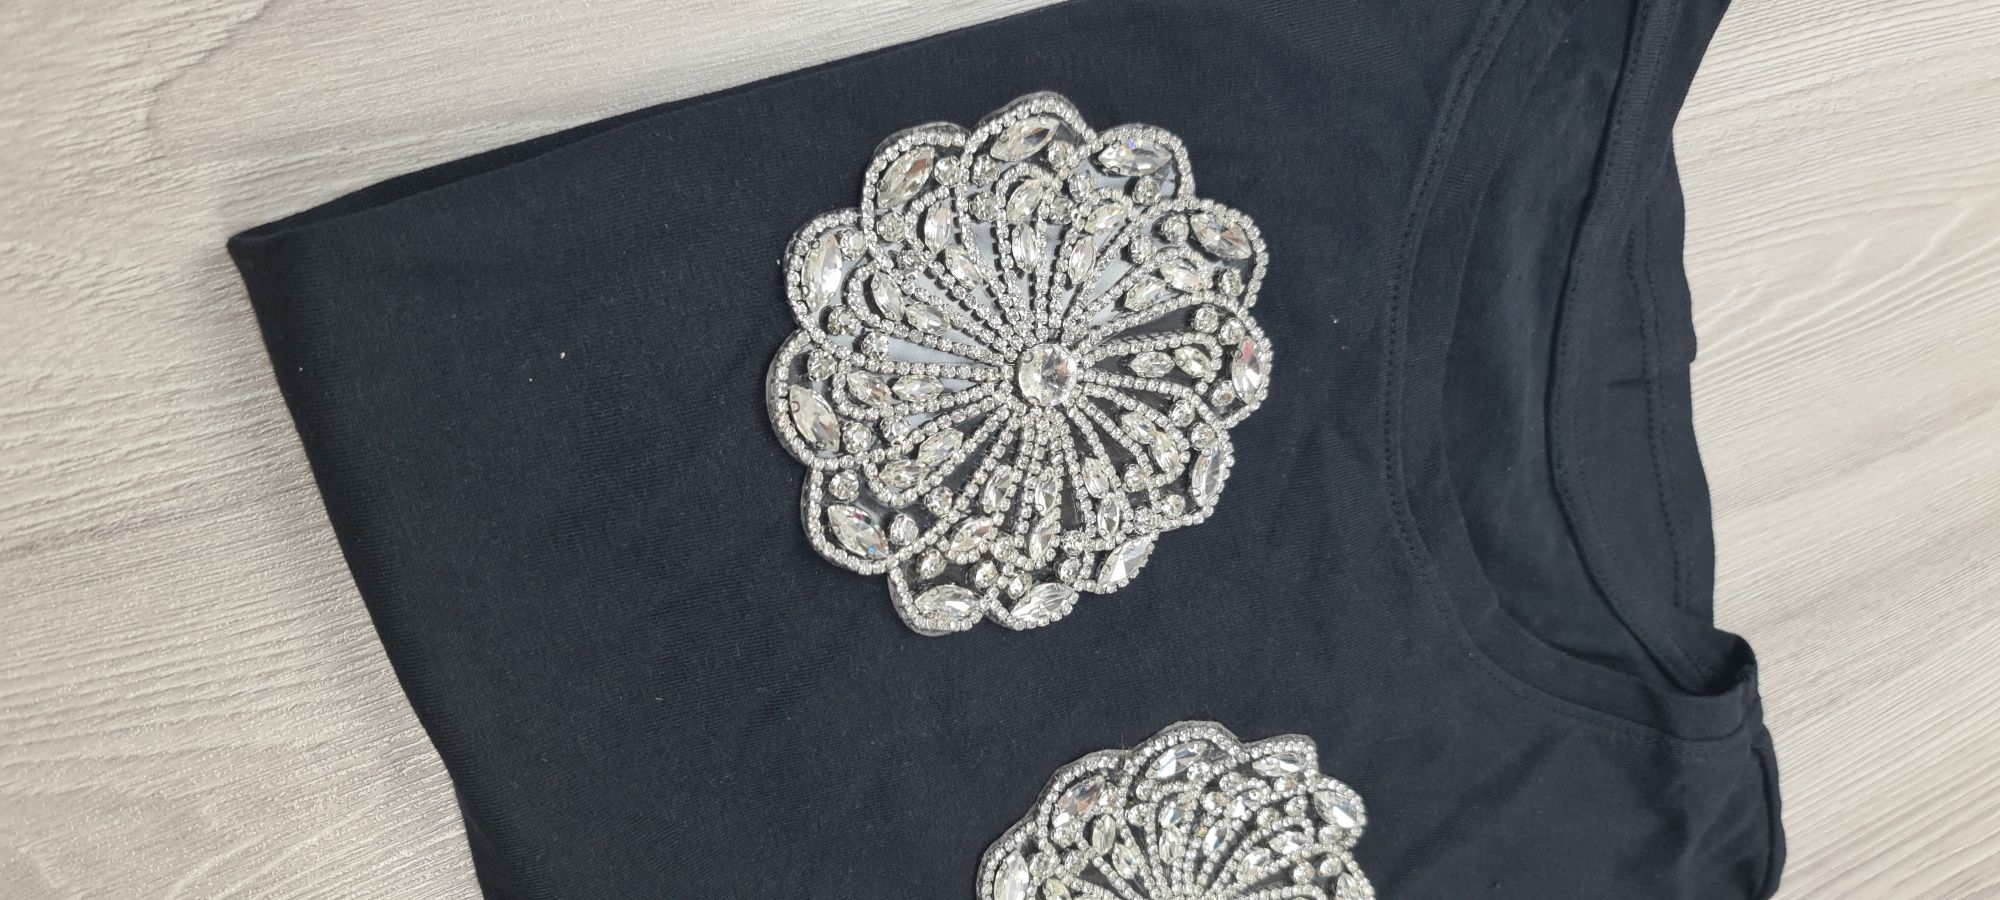 Tricou negru bumbac,accesorizat manual cu pietre argintii (cusute)
S/m